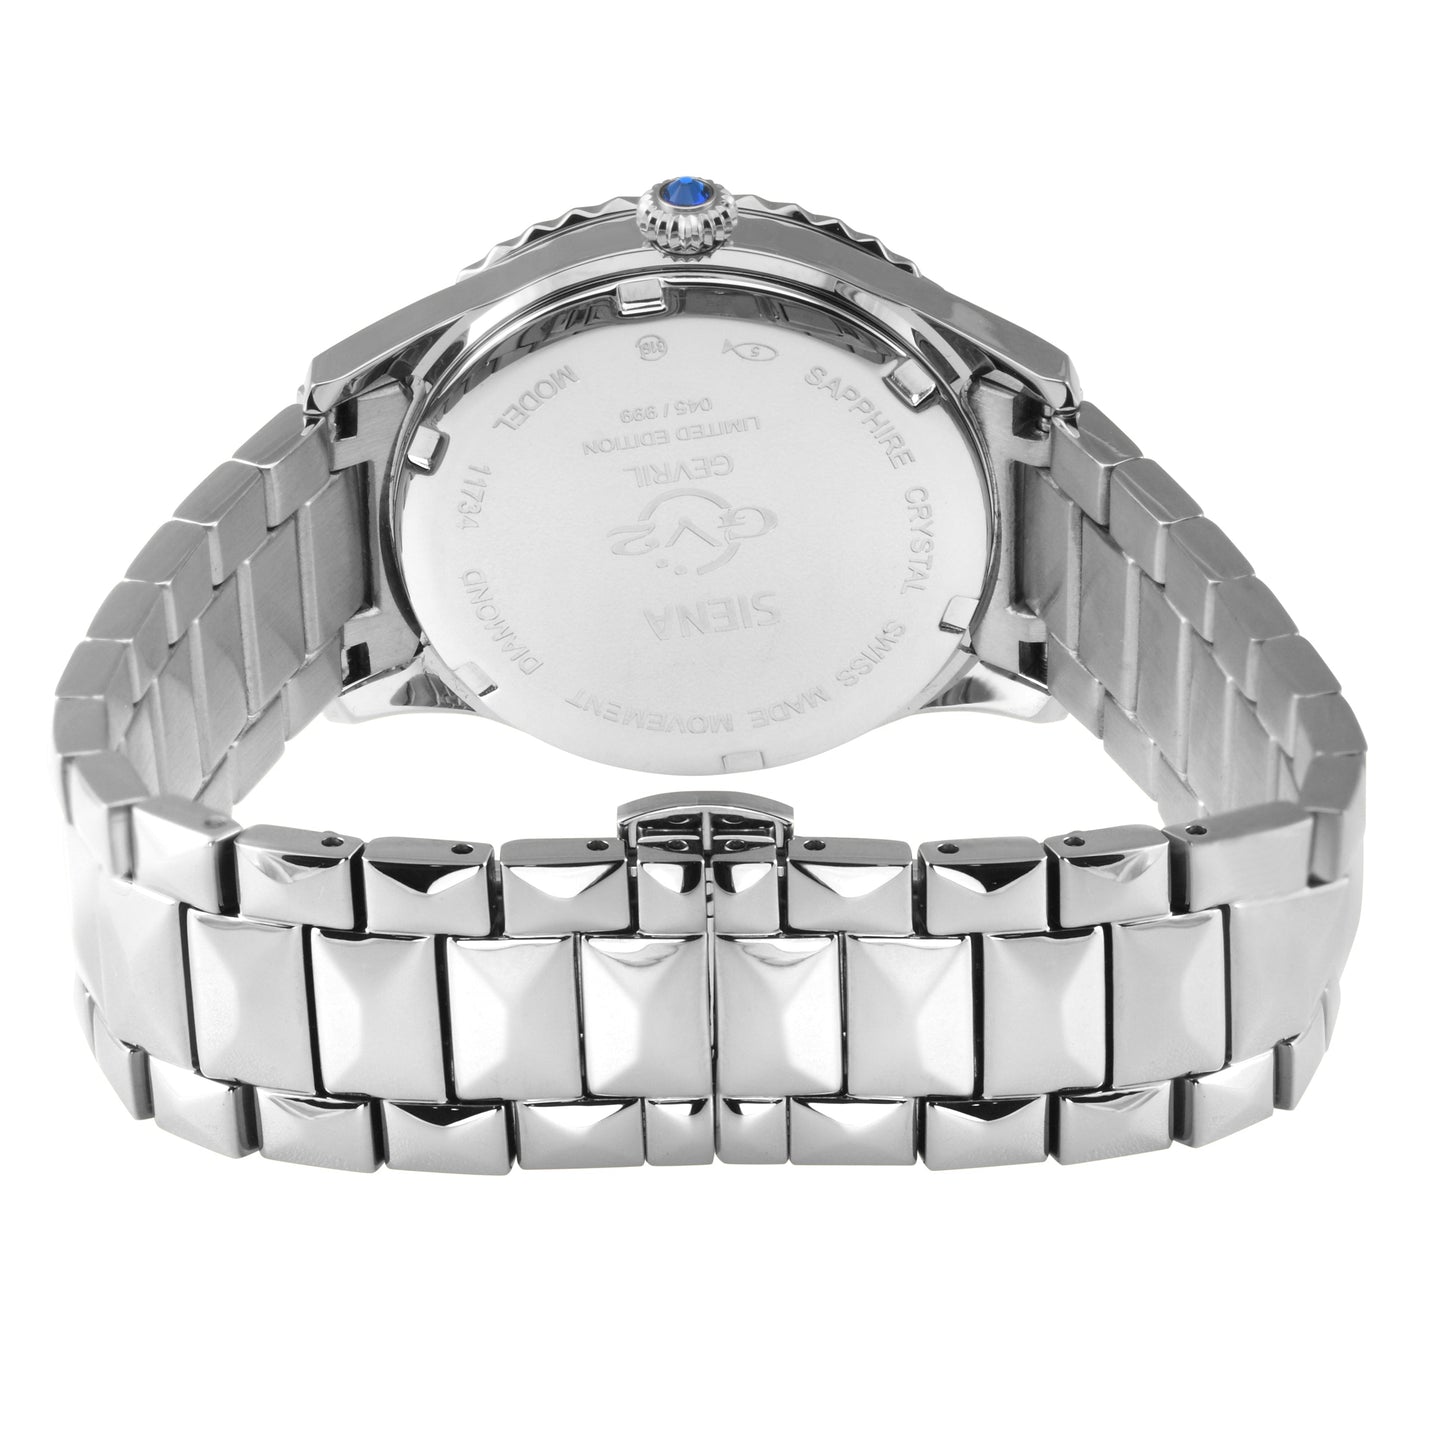 Gevril-Luxury-Swiss-Watches-GV2 Siena Diamond - Midsize-11734B